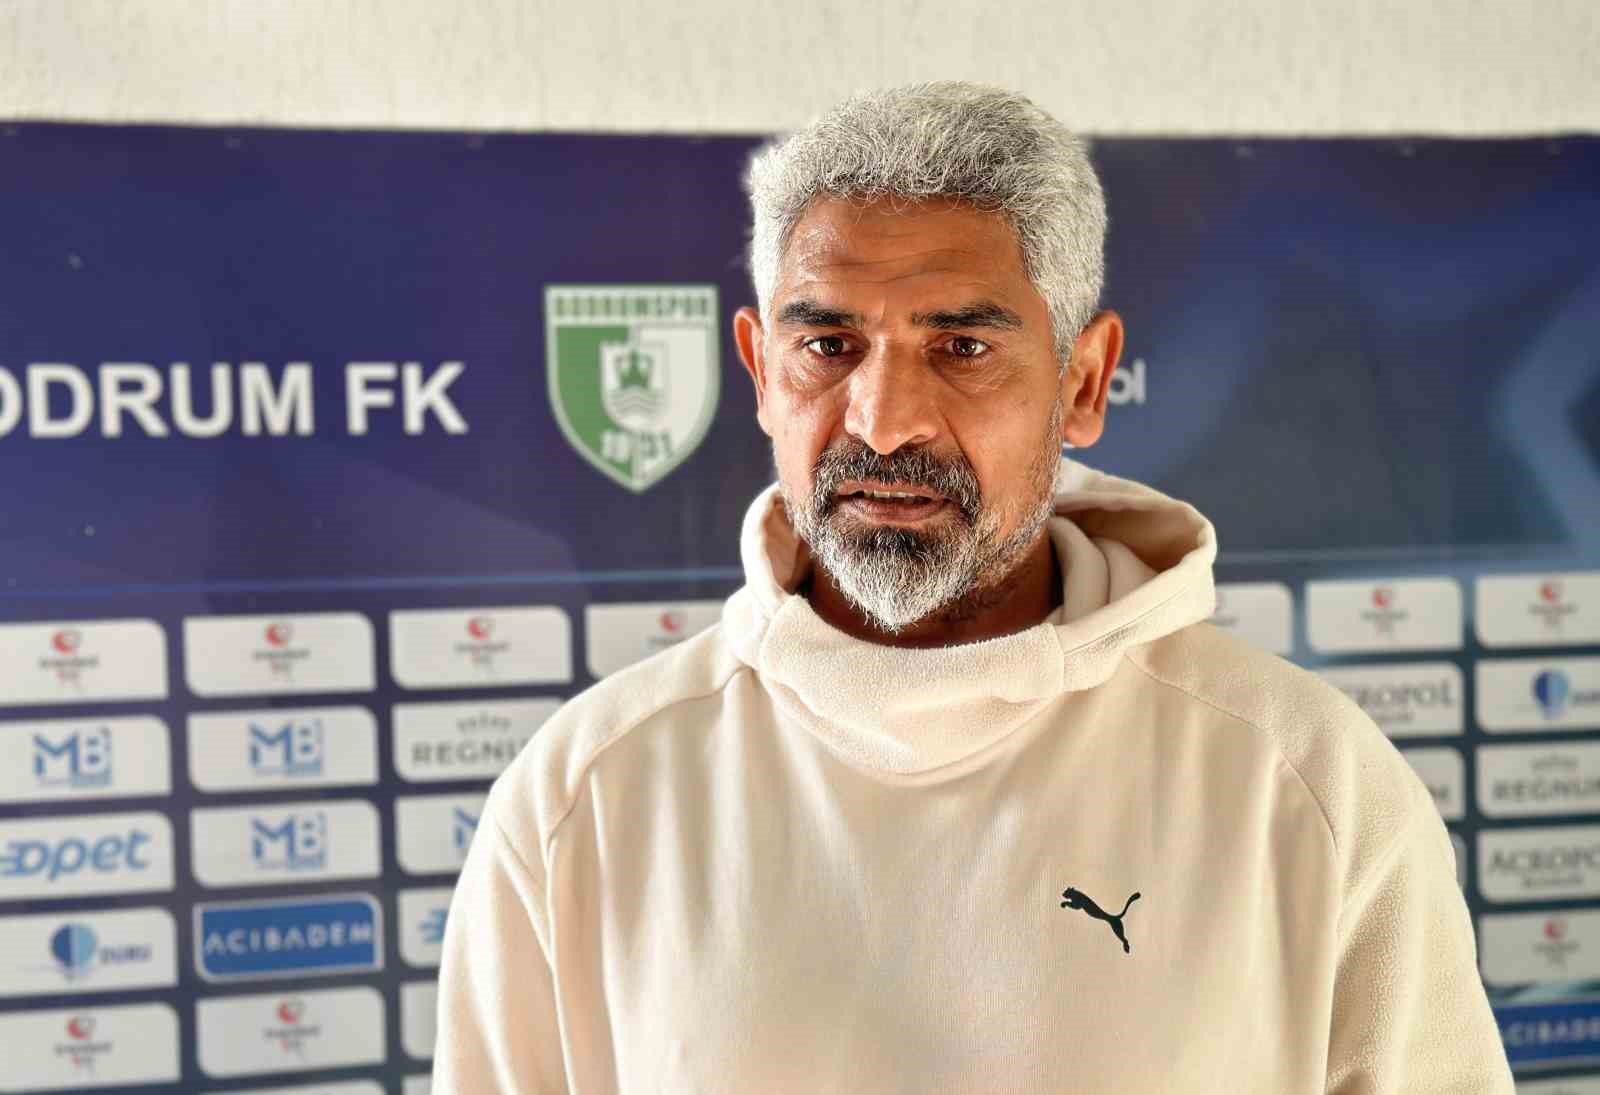 Bodrum FK Teknik Direktörü İsmet Taşdemir: “Play-off potası içerisinde olduğum için mutluyum”
